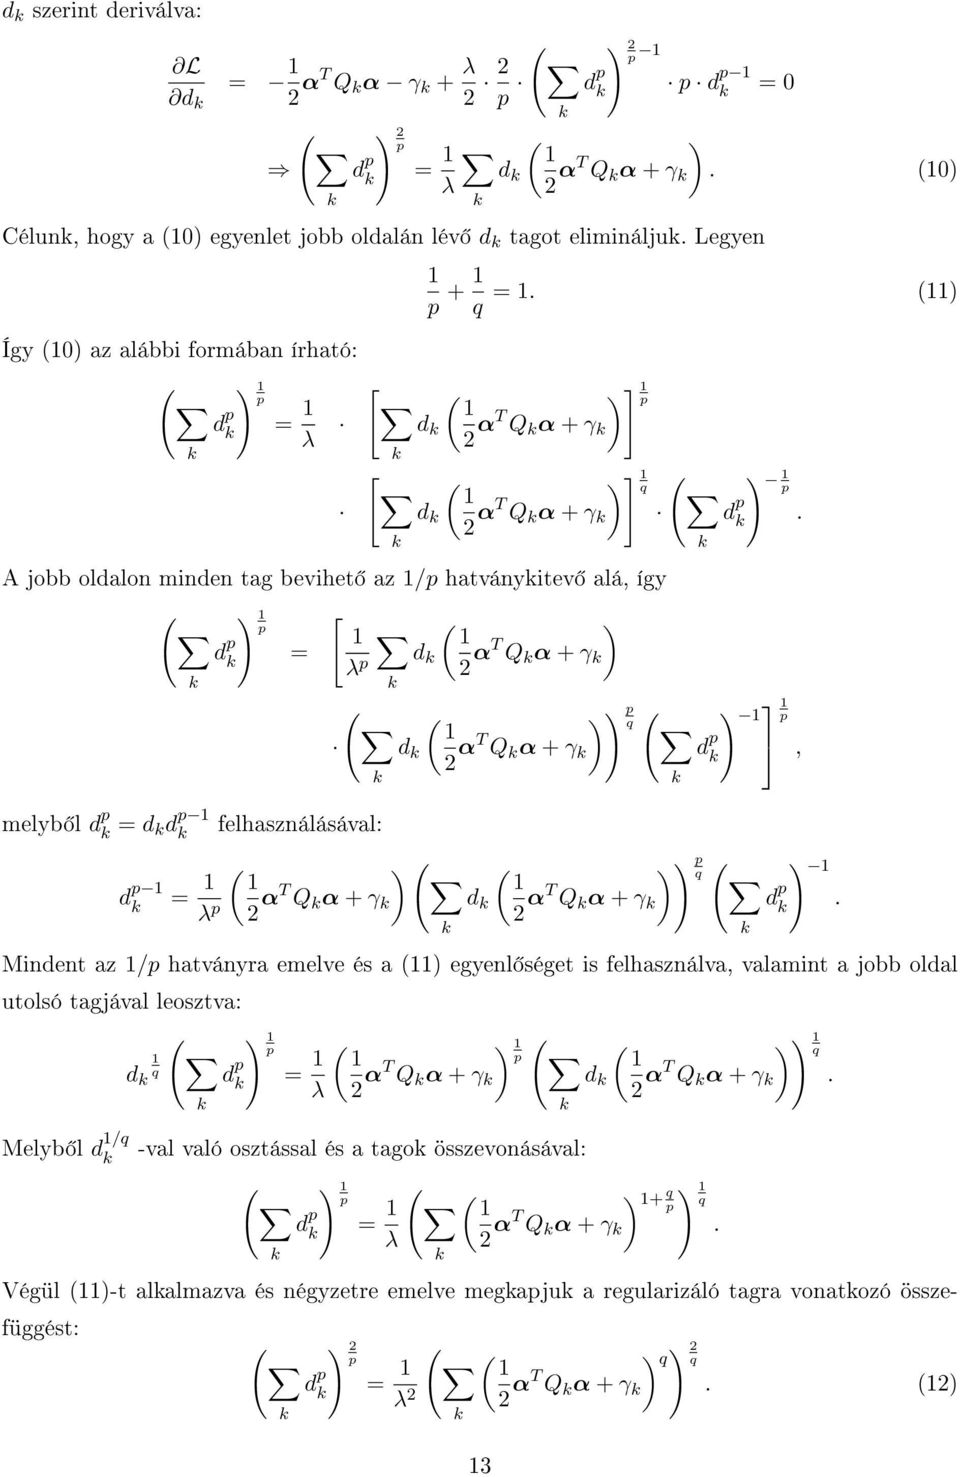 (11) d ( 1 2 αt Q α + γ ) ] 1 p ( ) ] 1 ( 1 d 2 αt Q α + γ A jobb oldalon minden tag bevihet az 1/p hatványitev alá, így ( melyb l d p = d d p 1 d p 1 d p ) 1 p = [ 1 ( ) 1 λ p d 2 αt Q α + γ ( ( ) )